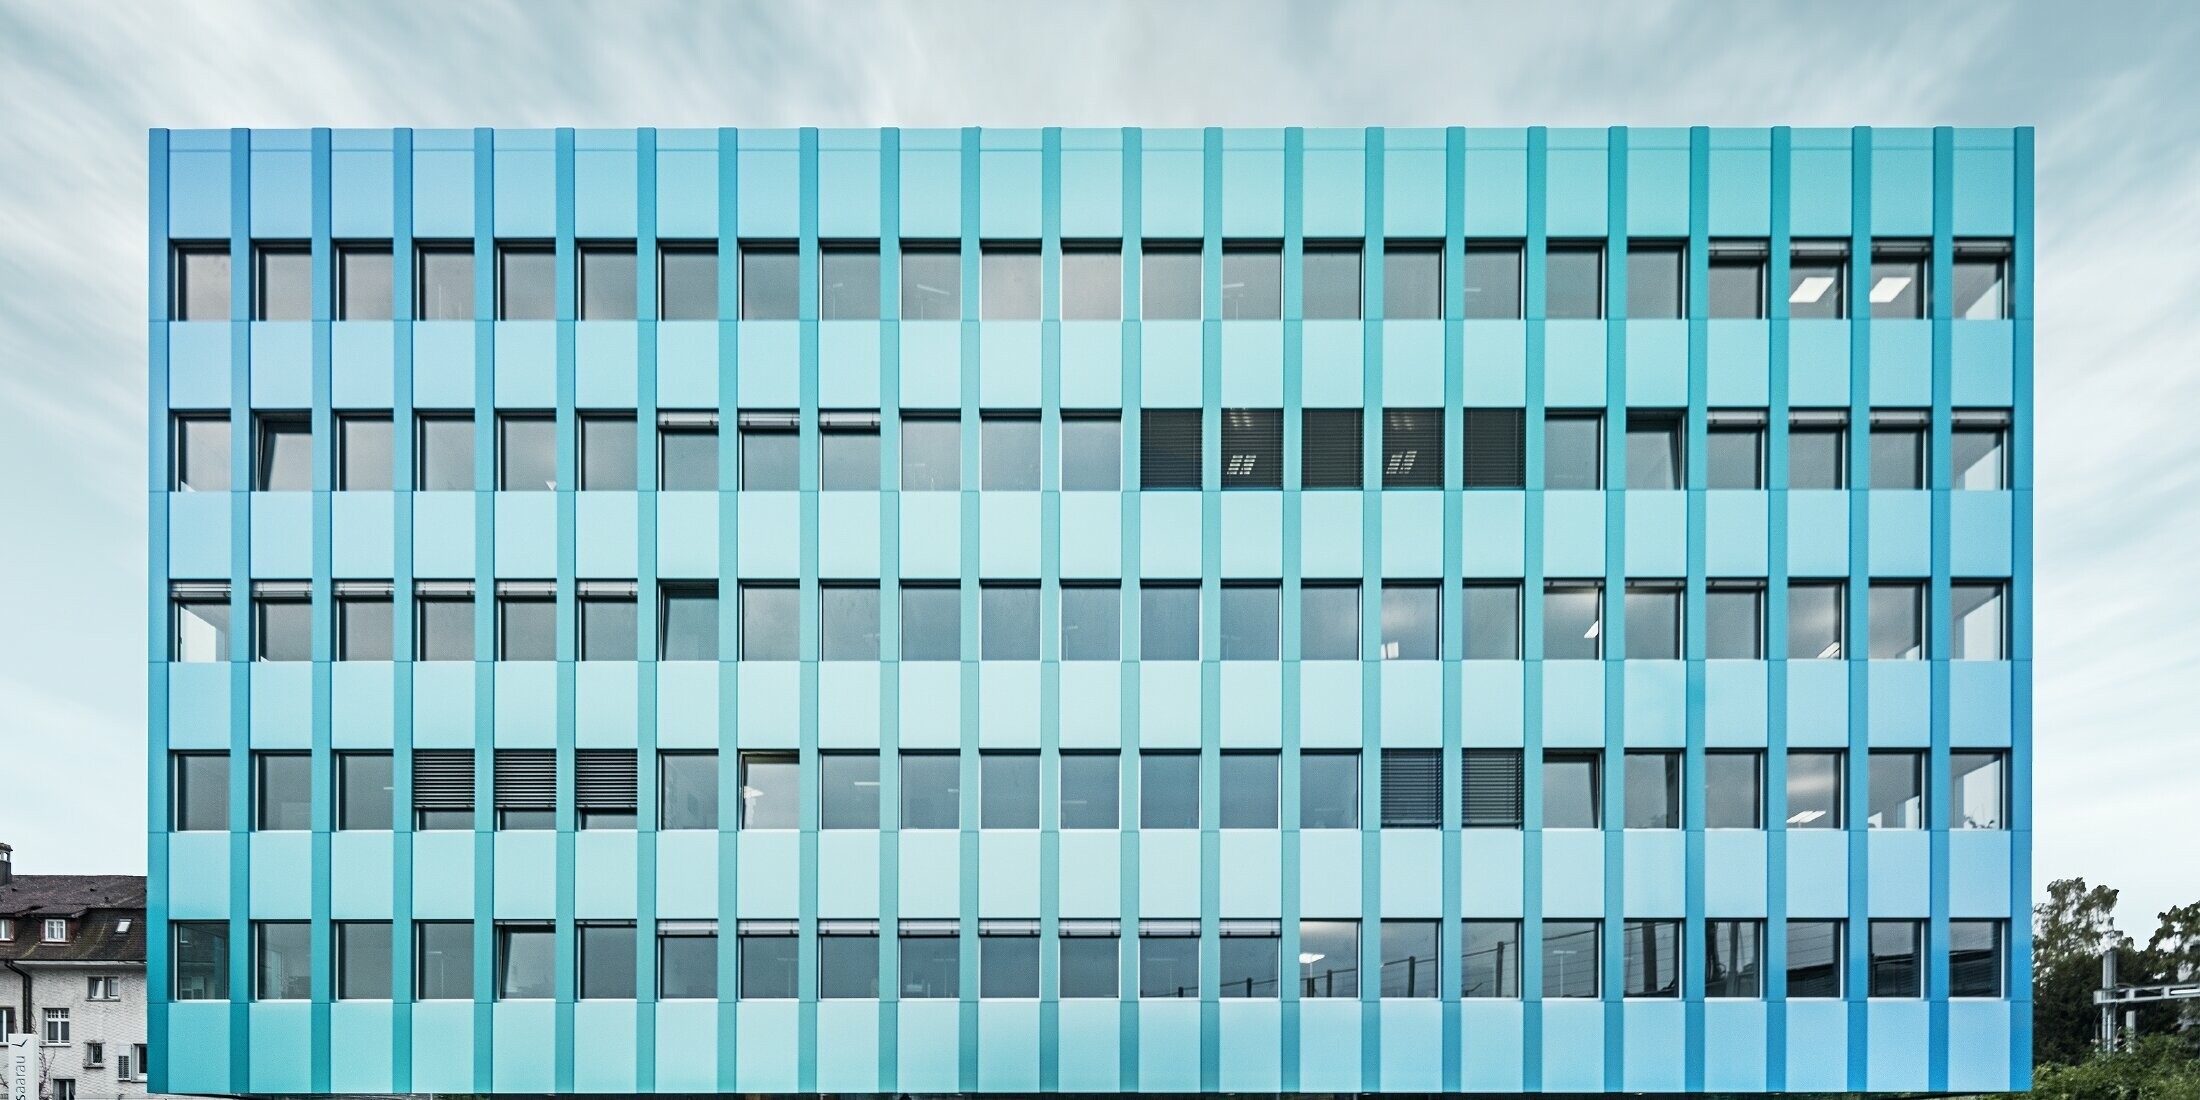 Frontale Ansicht des Wielandhauses in Aarau mit vielen Fenstern und einer blau-grünen PREFABOND Aluminiuim Verbundplatten-Fassade von PREFA. Die Fassade schimmert in blau/grün durch das eigene Beschichtungsverfahren.